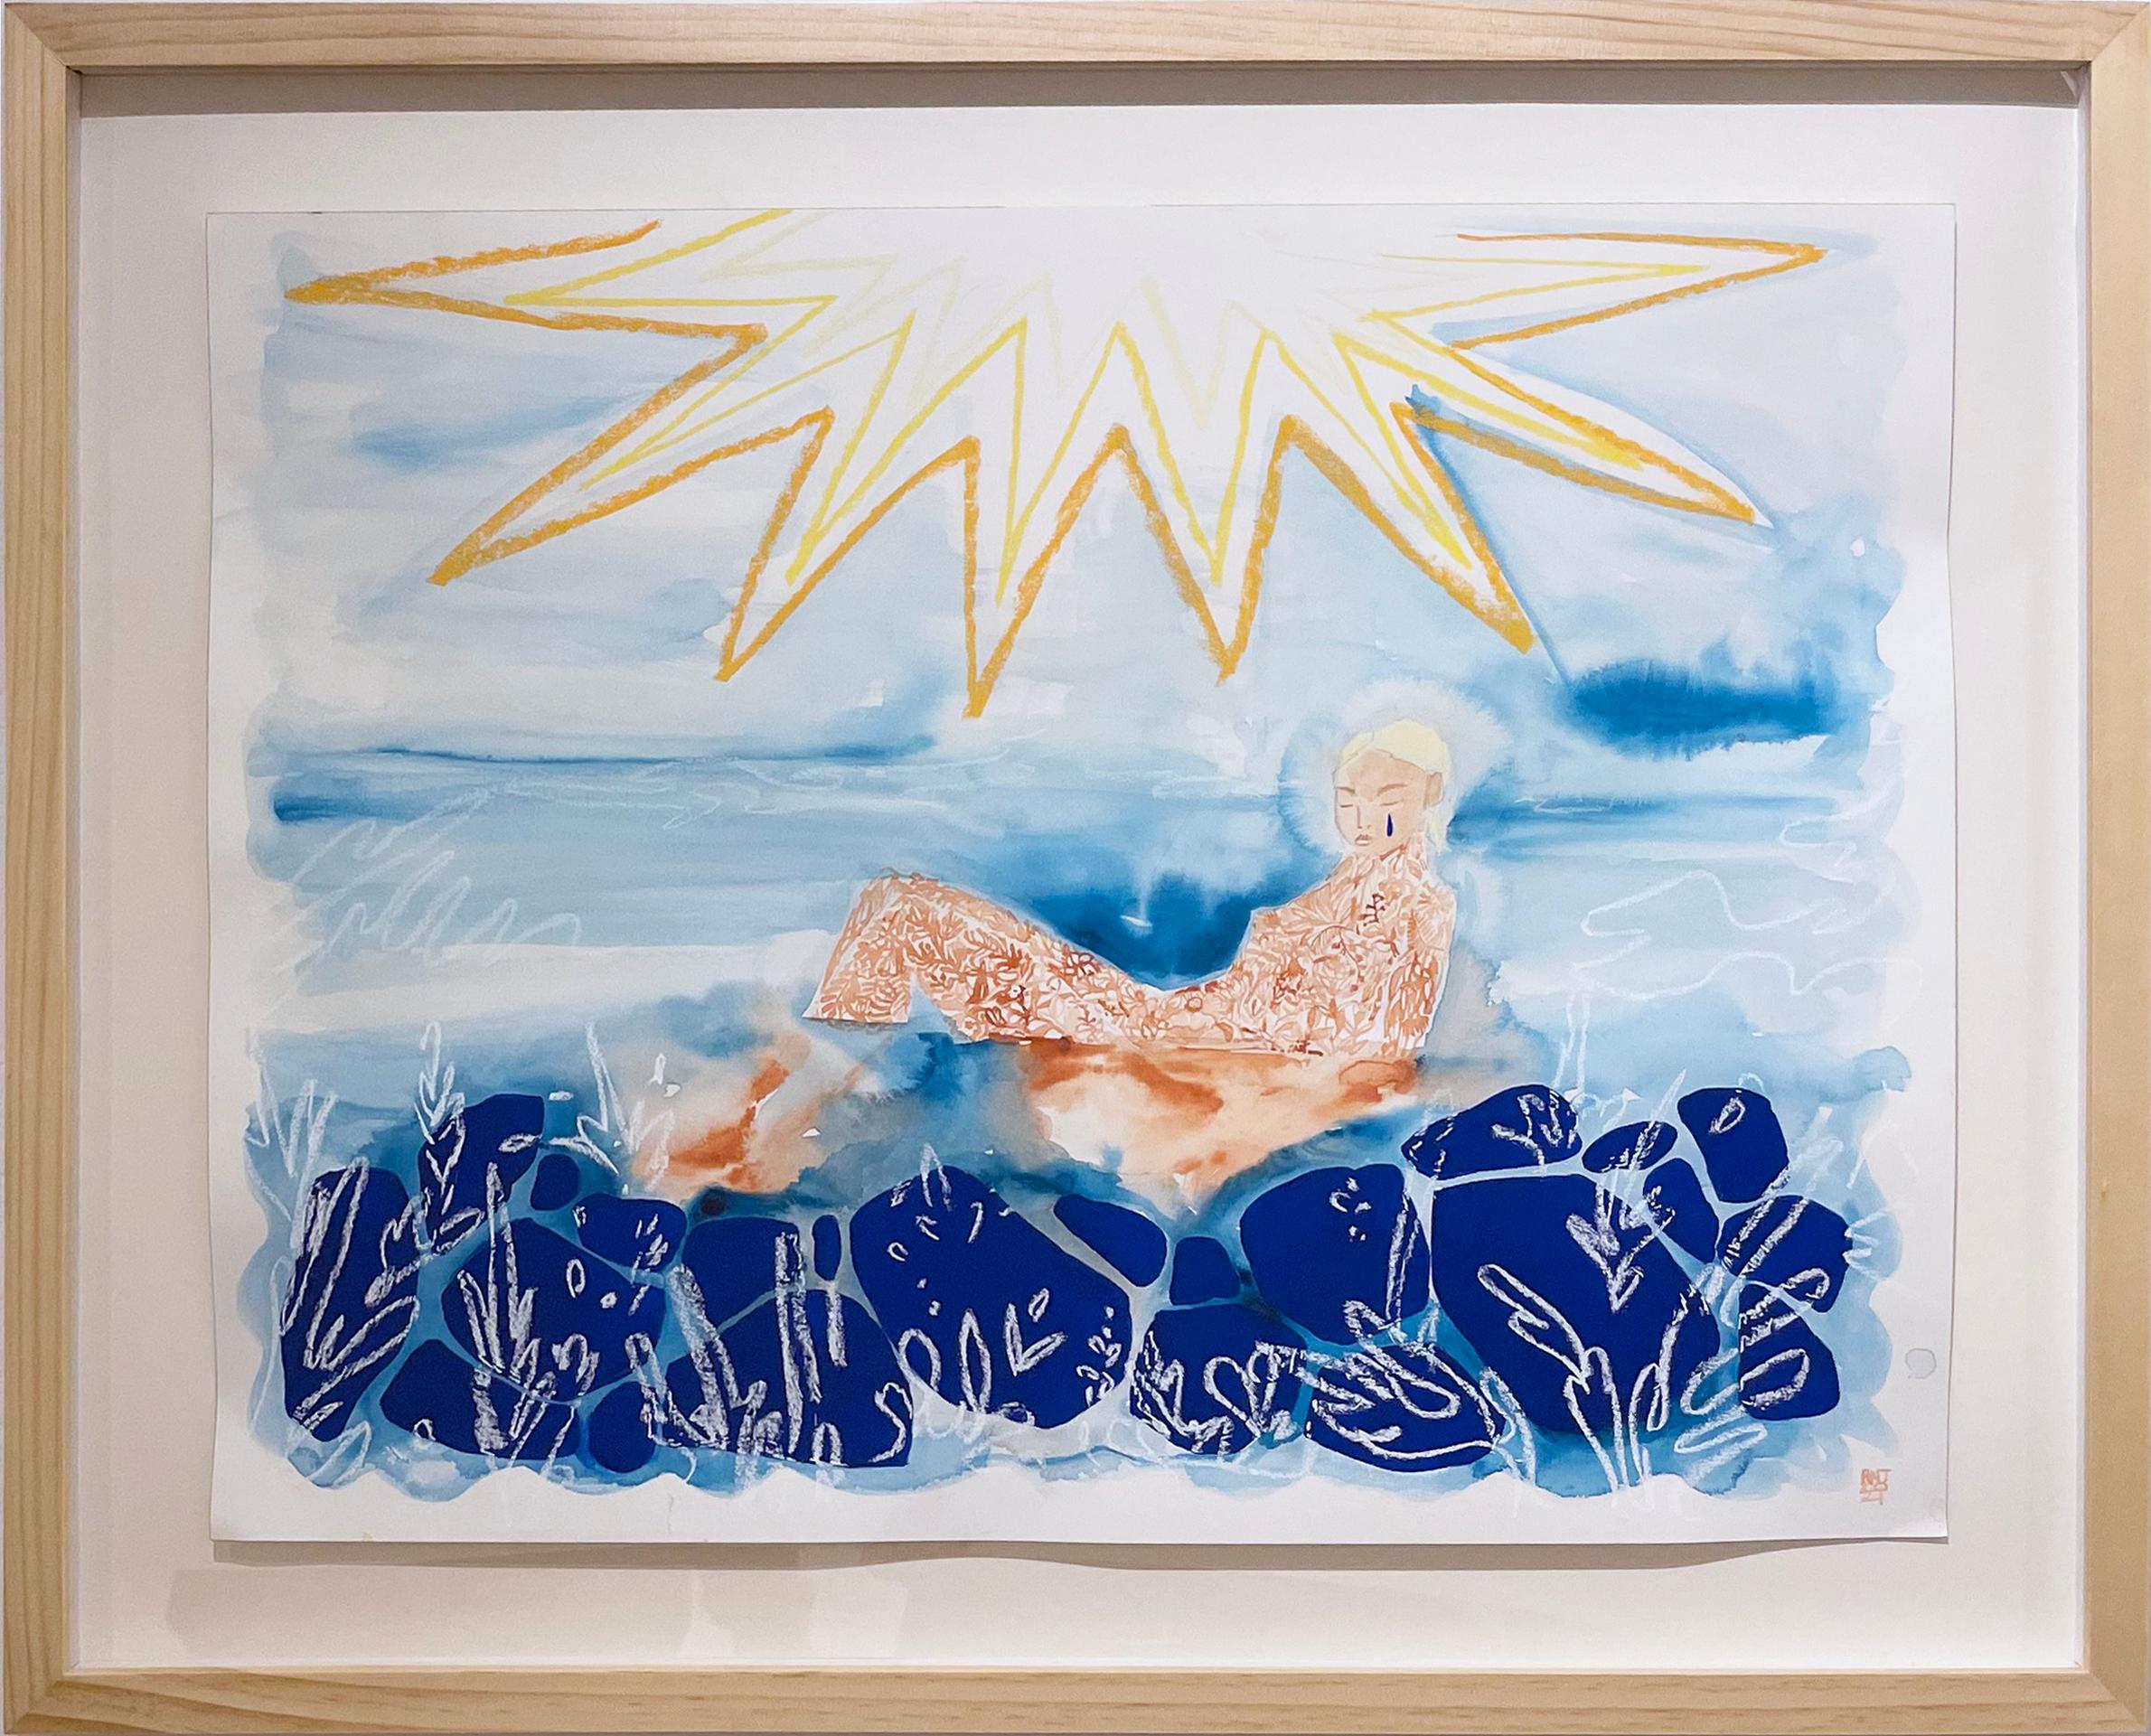 Sunbath, 2021, Meereslandschaft, weibliche Figur, Schwimmer, Meer, Sonne, Blau, Gelb, Gold (Zeitgenössisch), Painting, von Rebecca Johnson